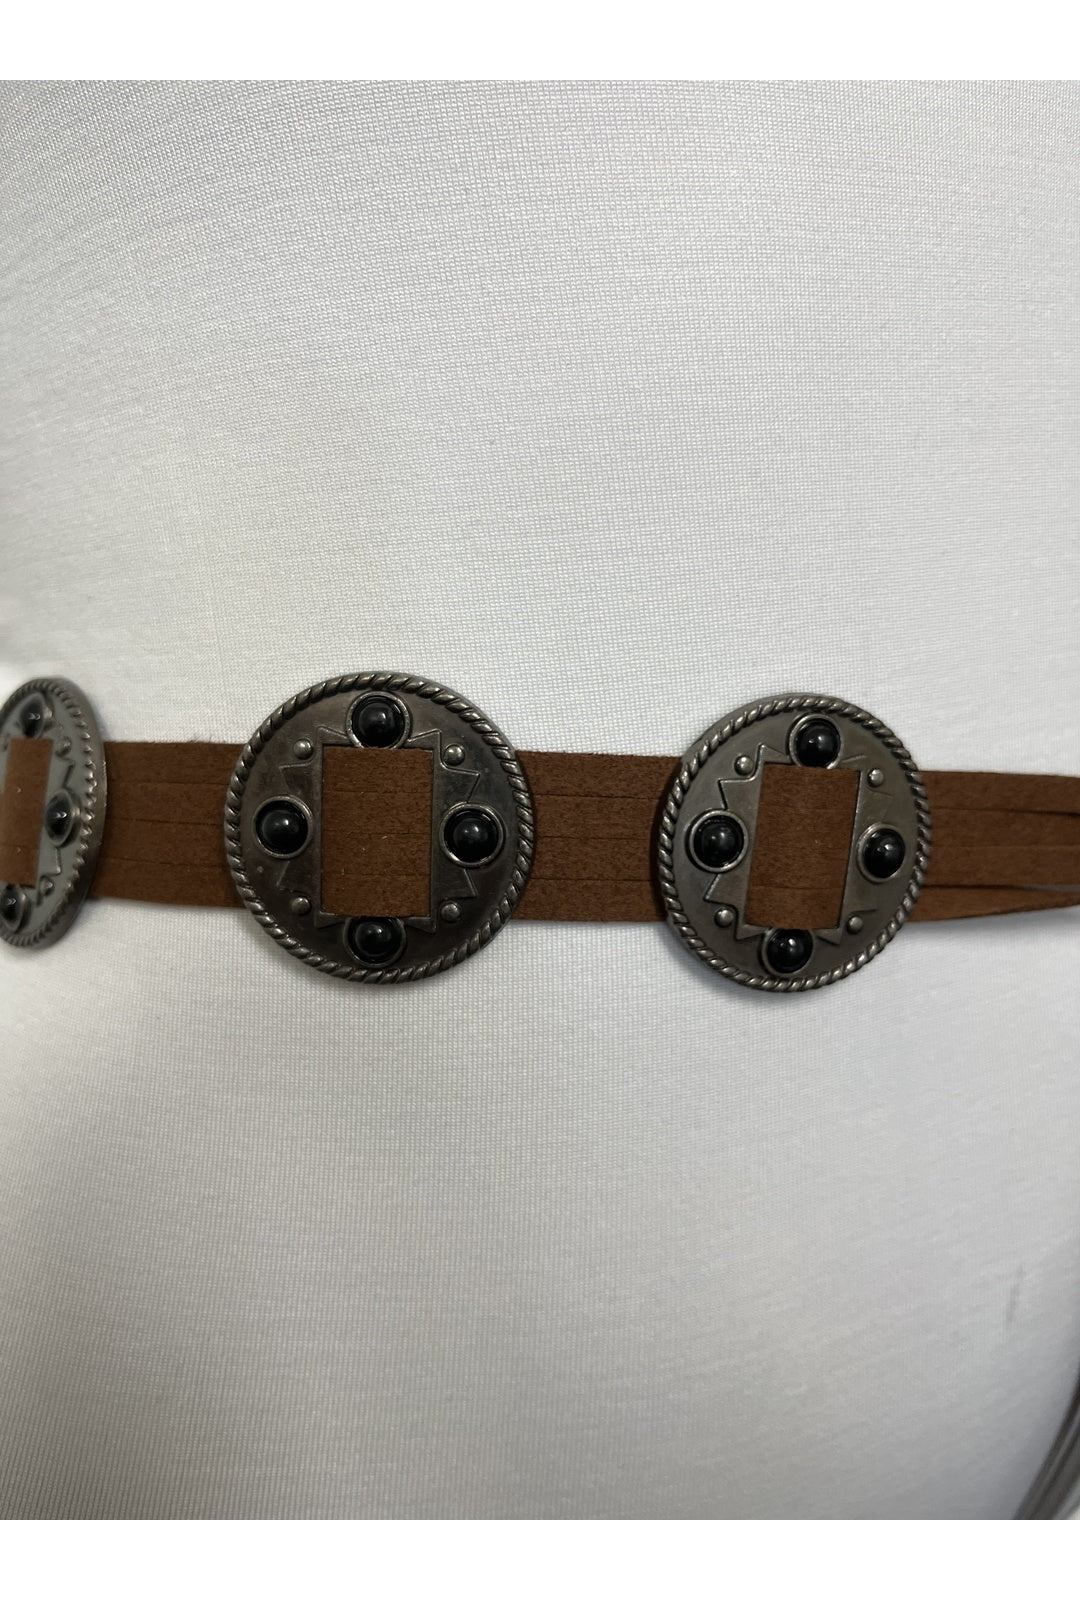 Brown Boho Leather Belt